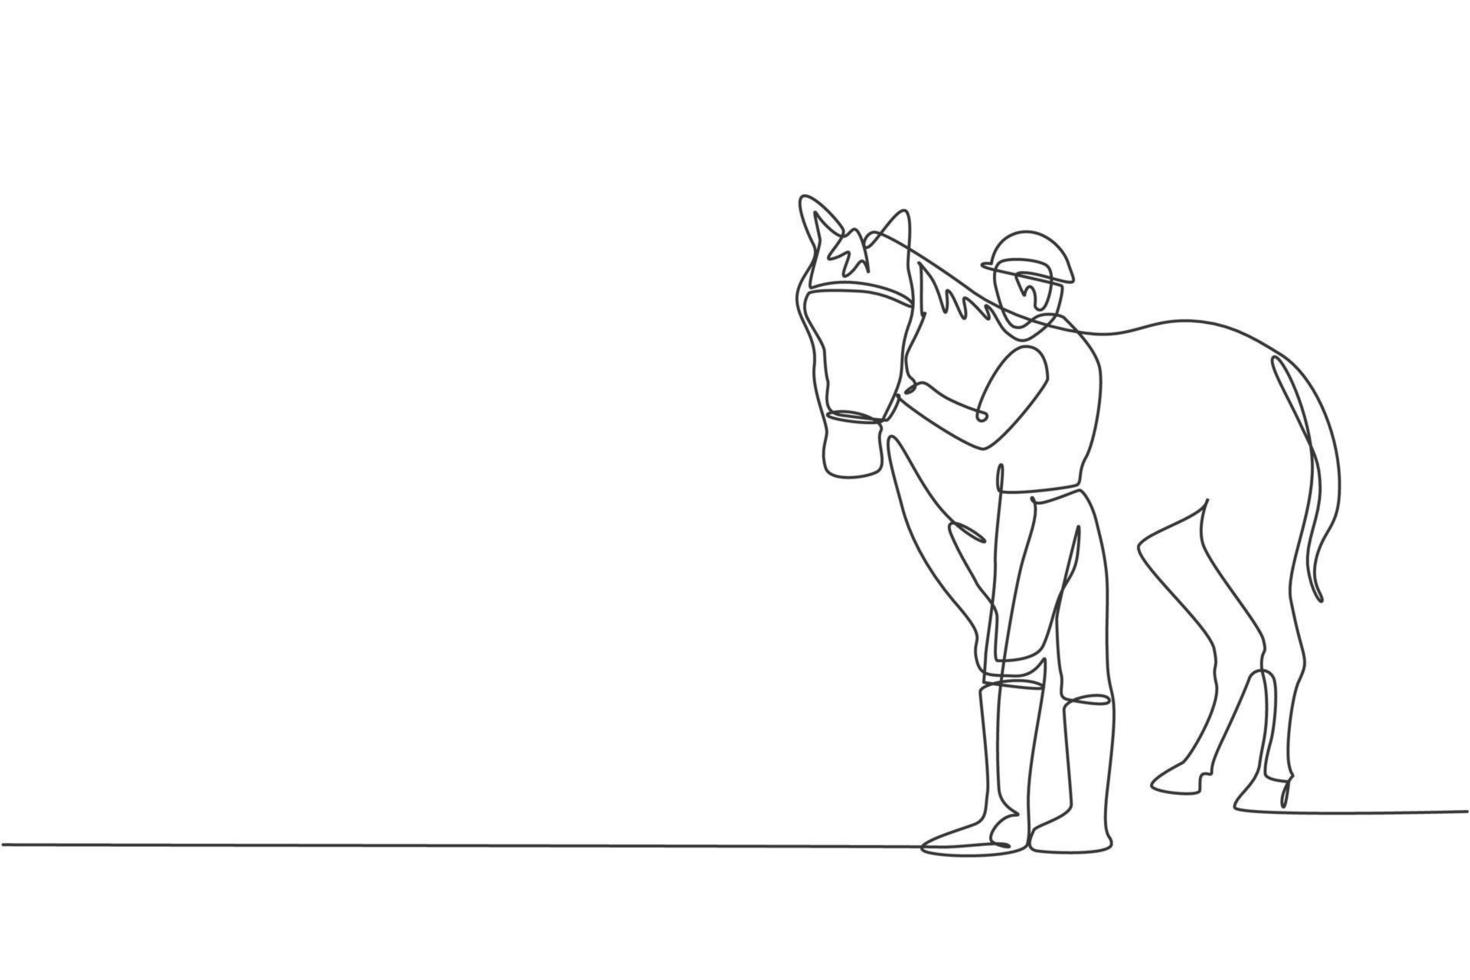 een doorlopende lijntekening van een jonge ruiter die paardenhaar wrijft en streelt. verzorging van paarden. paardensport competitie concept. dynamische enkele lijn tekenen ontwerp vector grafische afbeelding